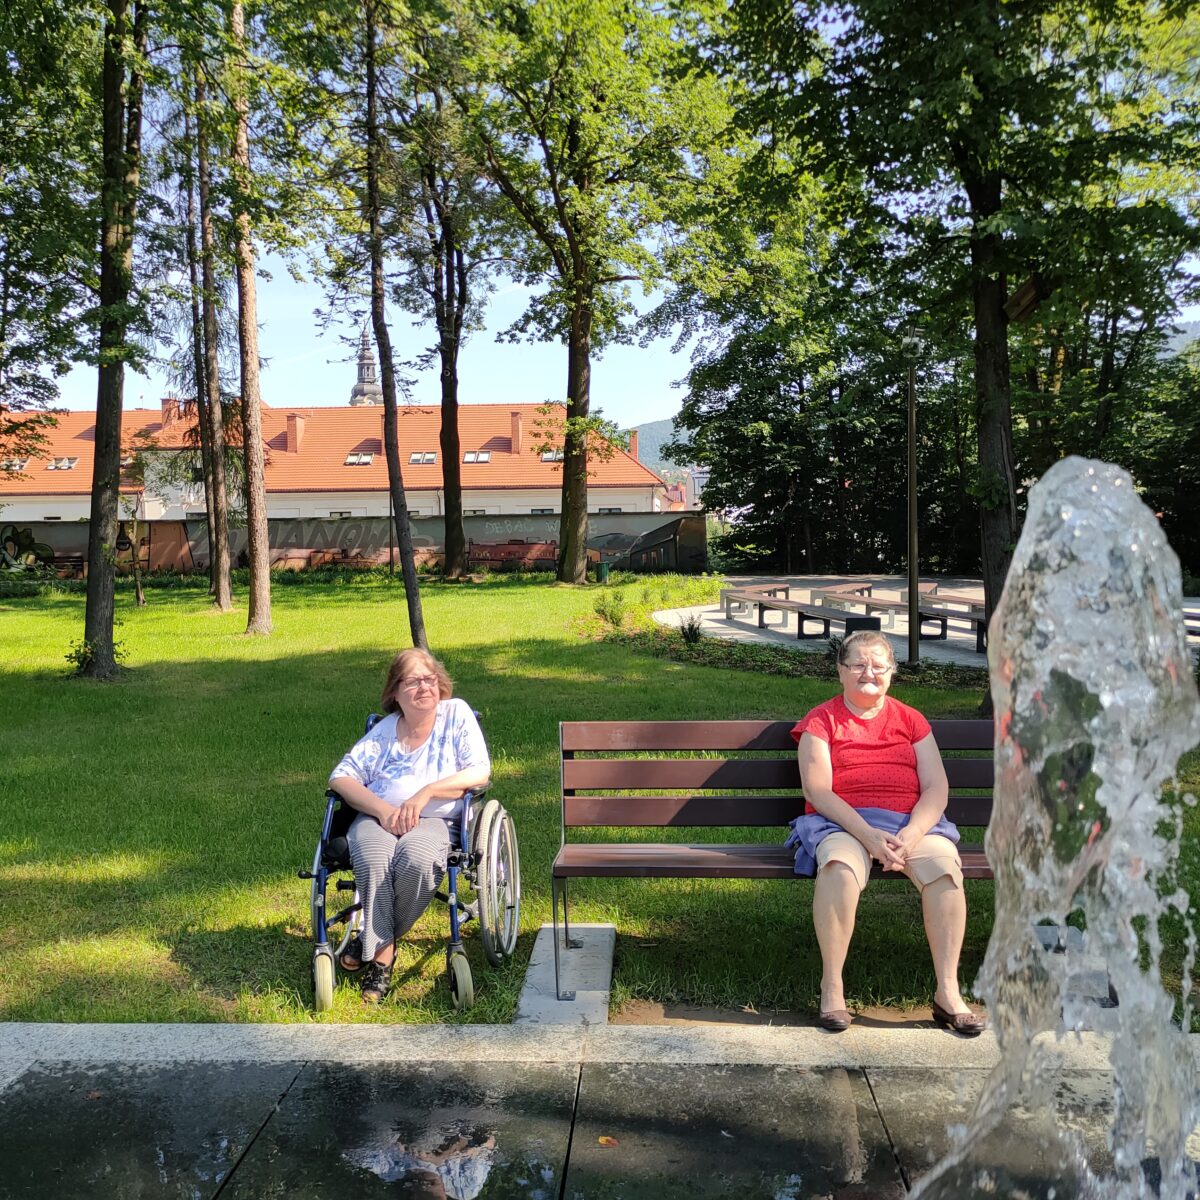 Na ławce siedzi starsza kobieta w czerwonej koszulce, obok ławki na wózku inwalidzkim siedzi druga kobieta. Na pierwszym planie widać wodę z fontanny, w tle drzewa i dach budynku.